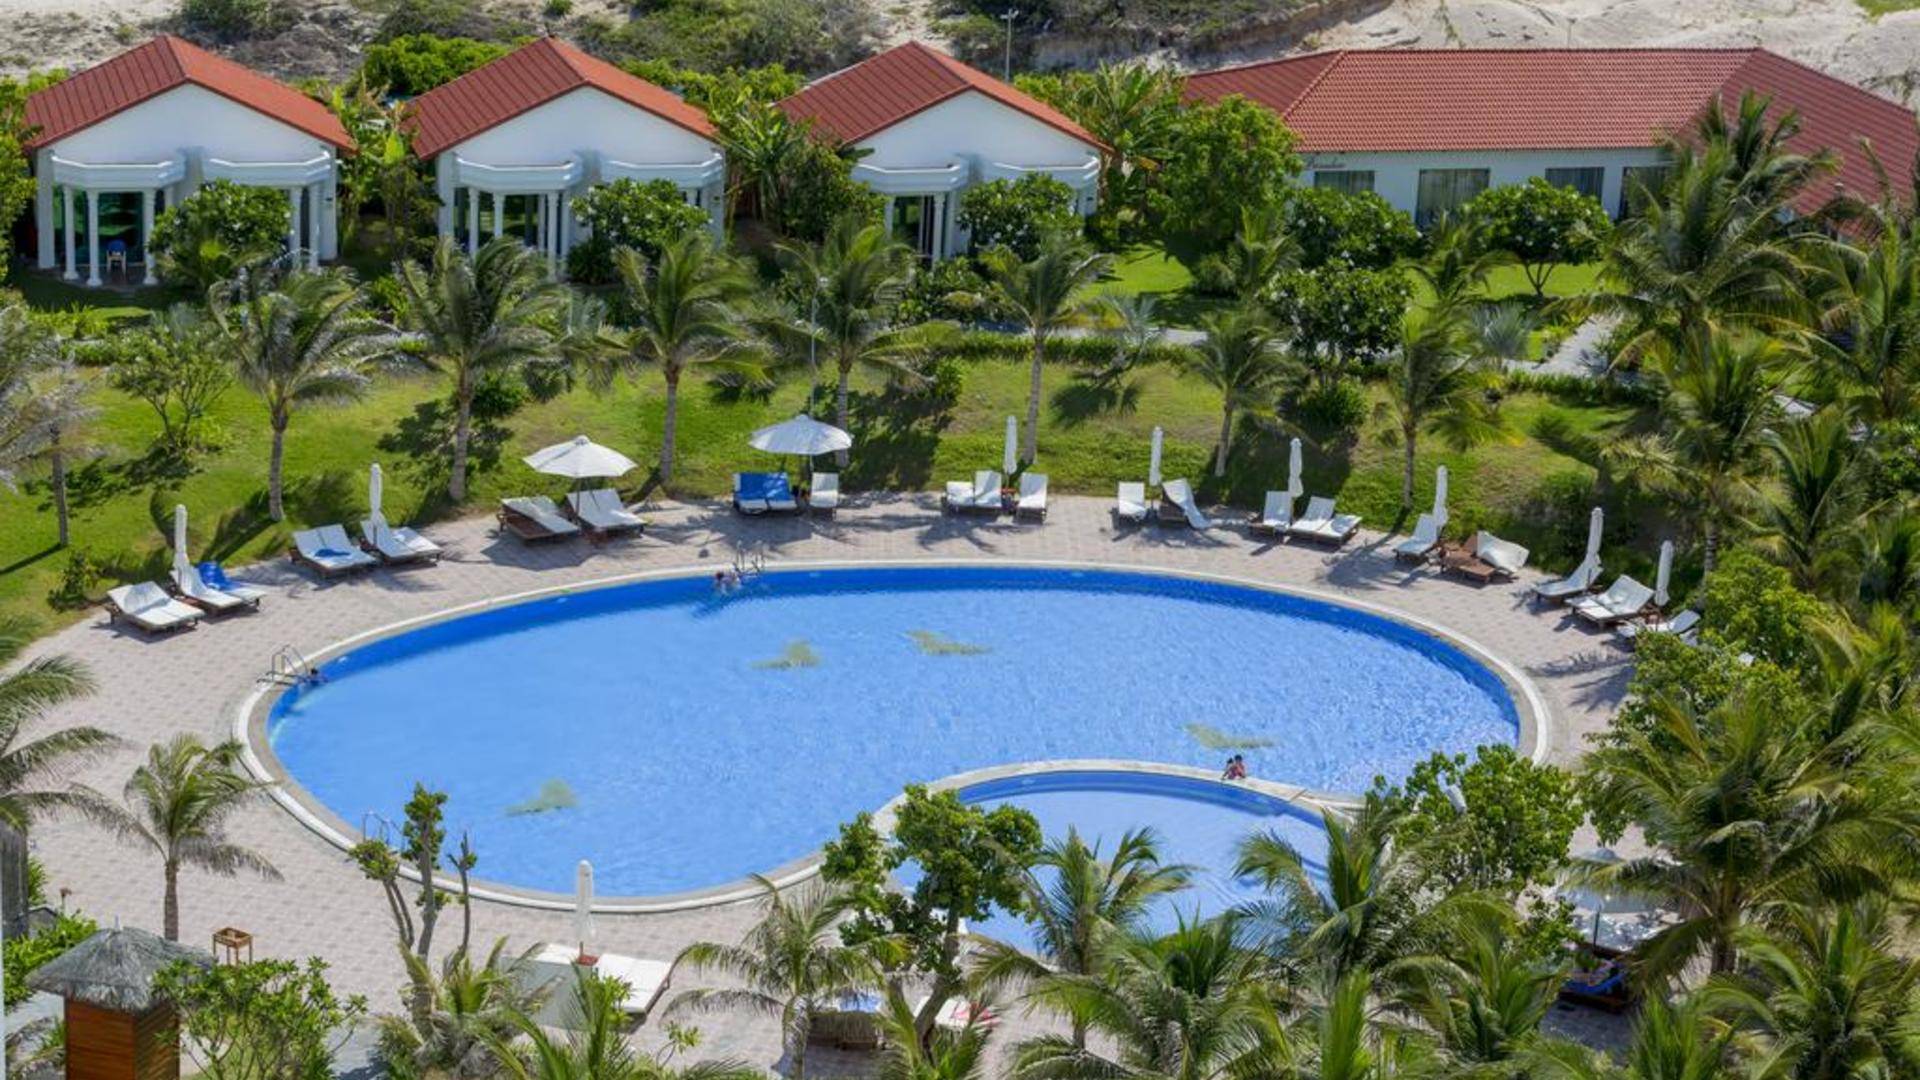 Dessole beach resort - nha trang (закрыт) 4* туры в отель из | поиск туров онлайн | нячанг | вьетнам